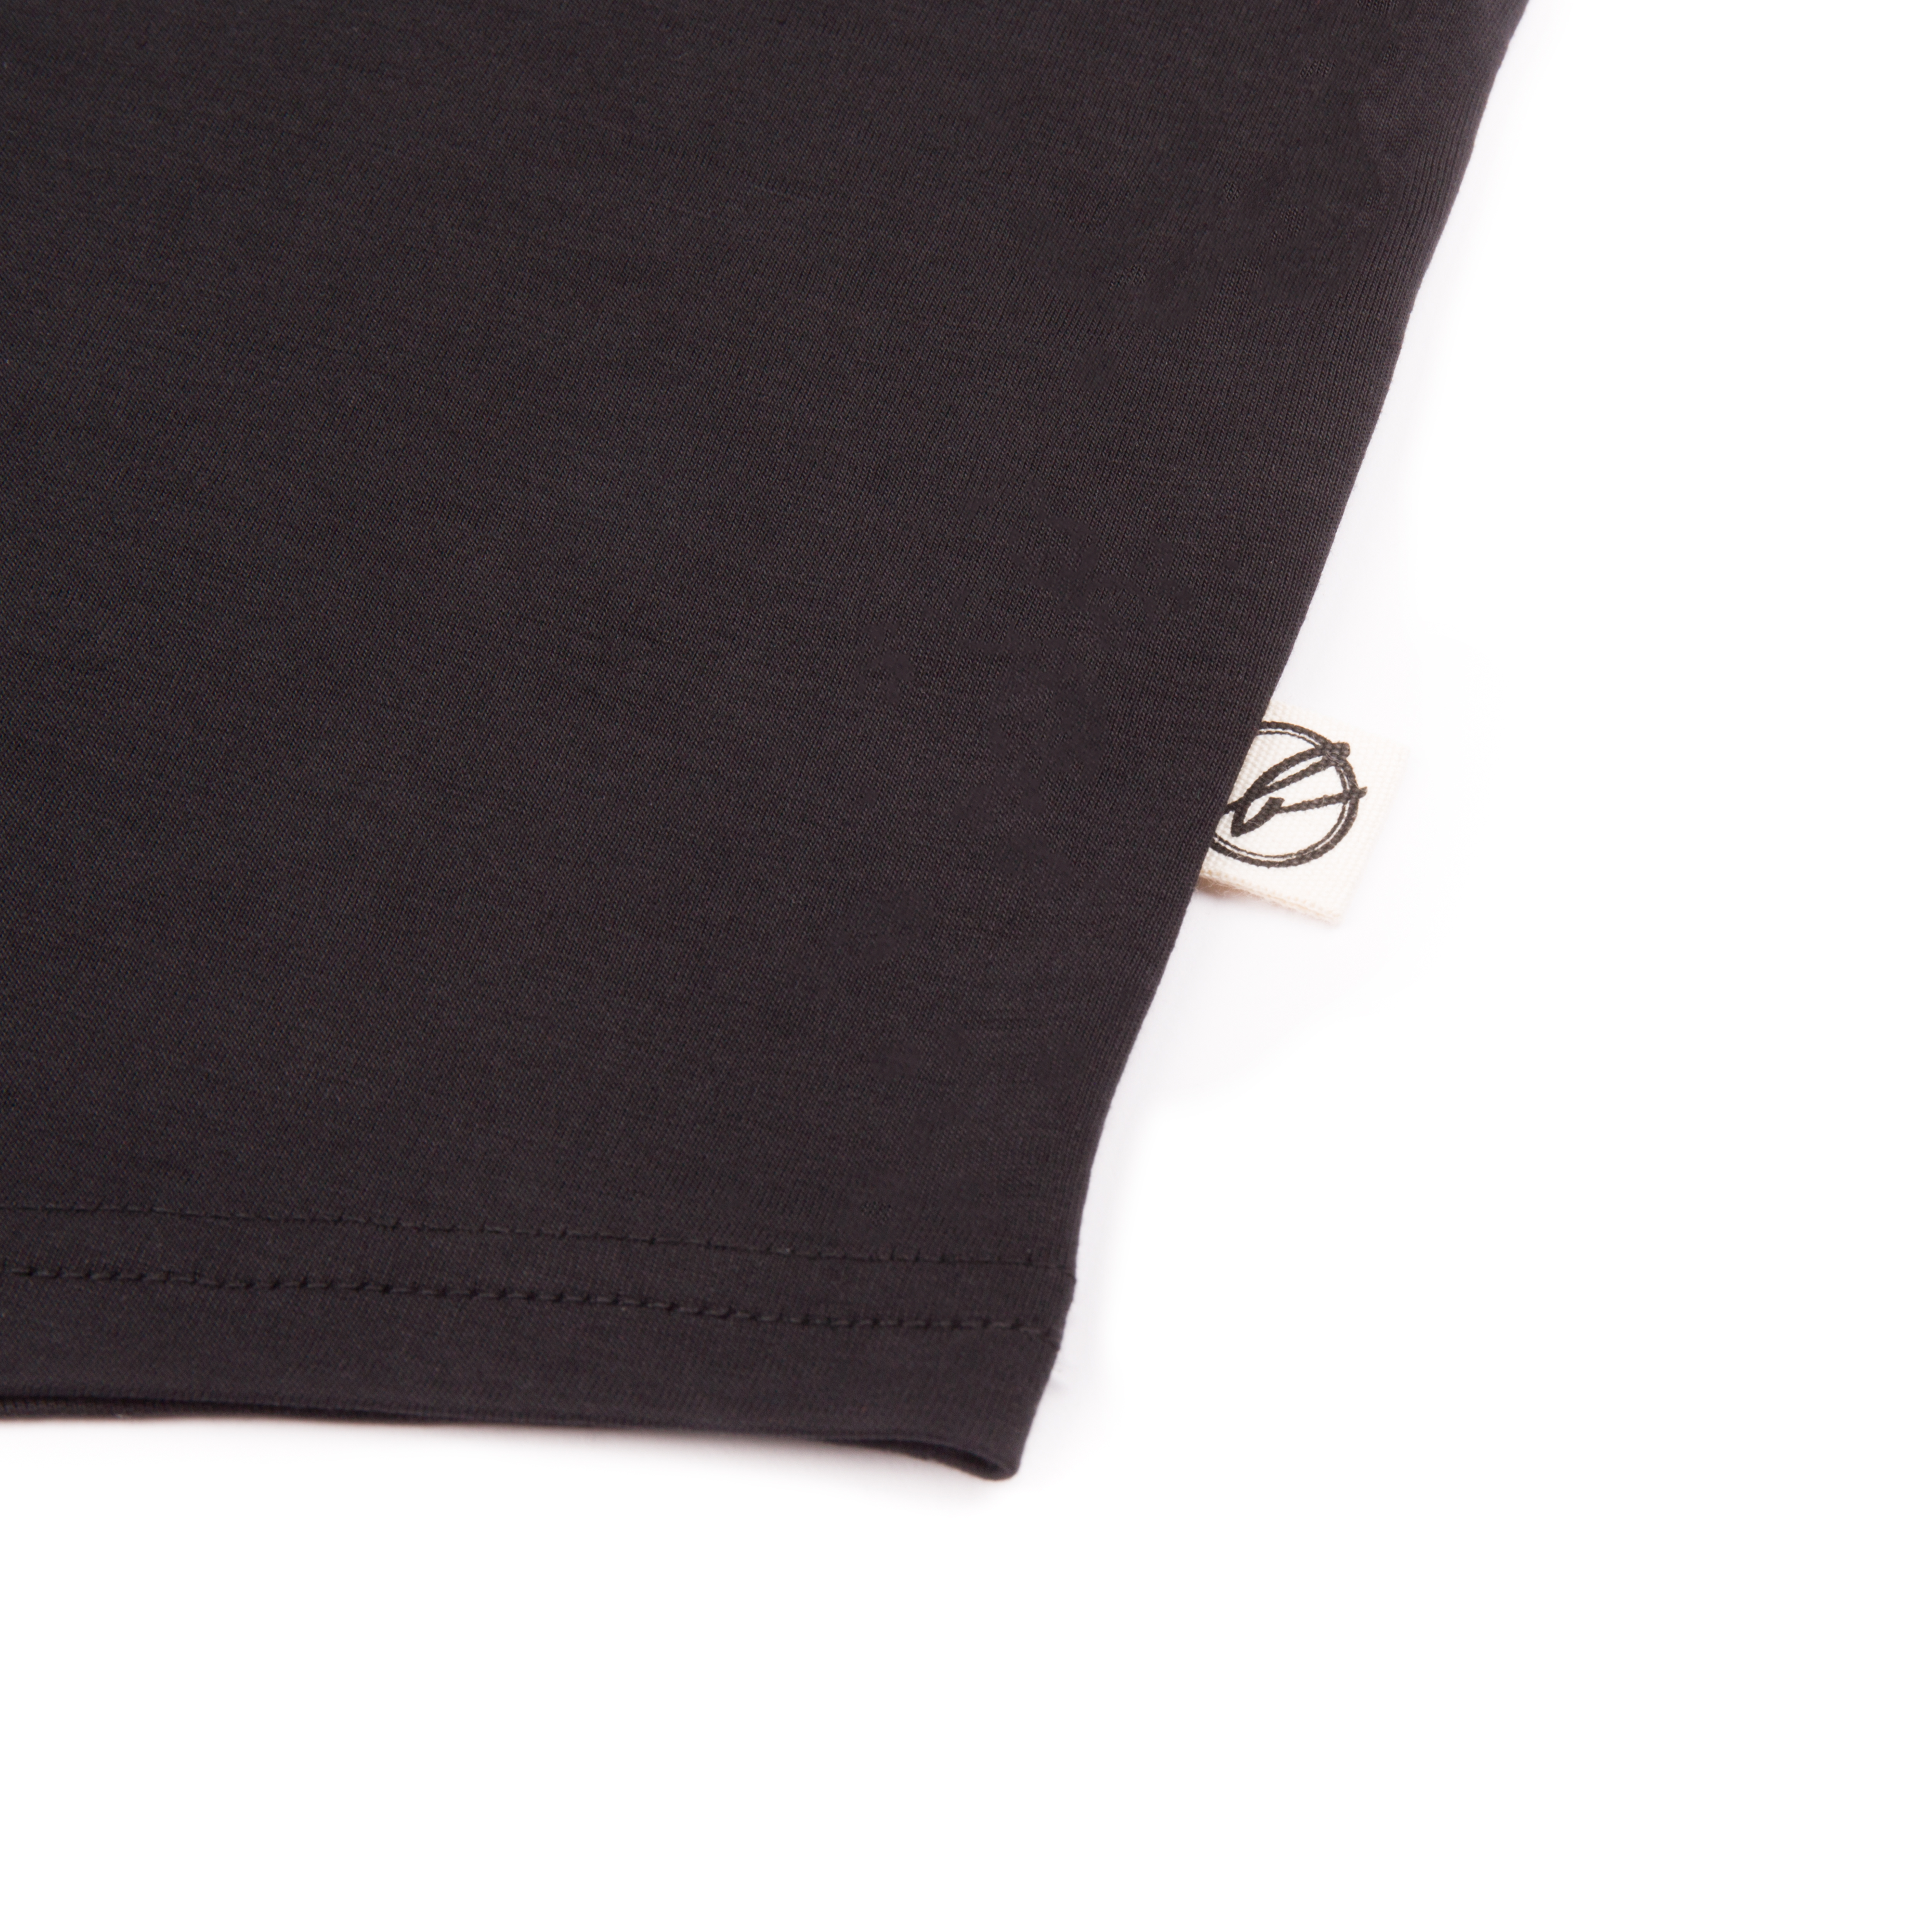 Basic 365 Damen T-Shirt black